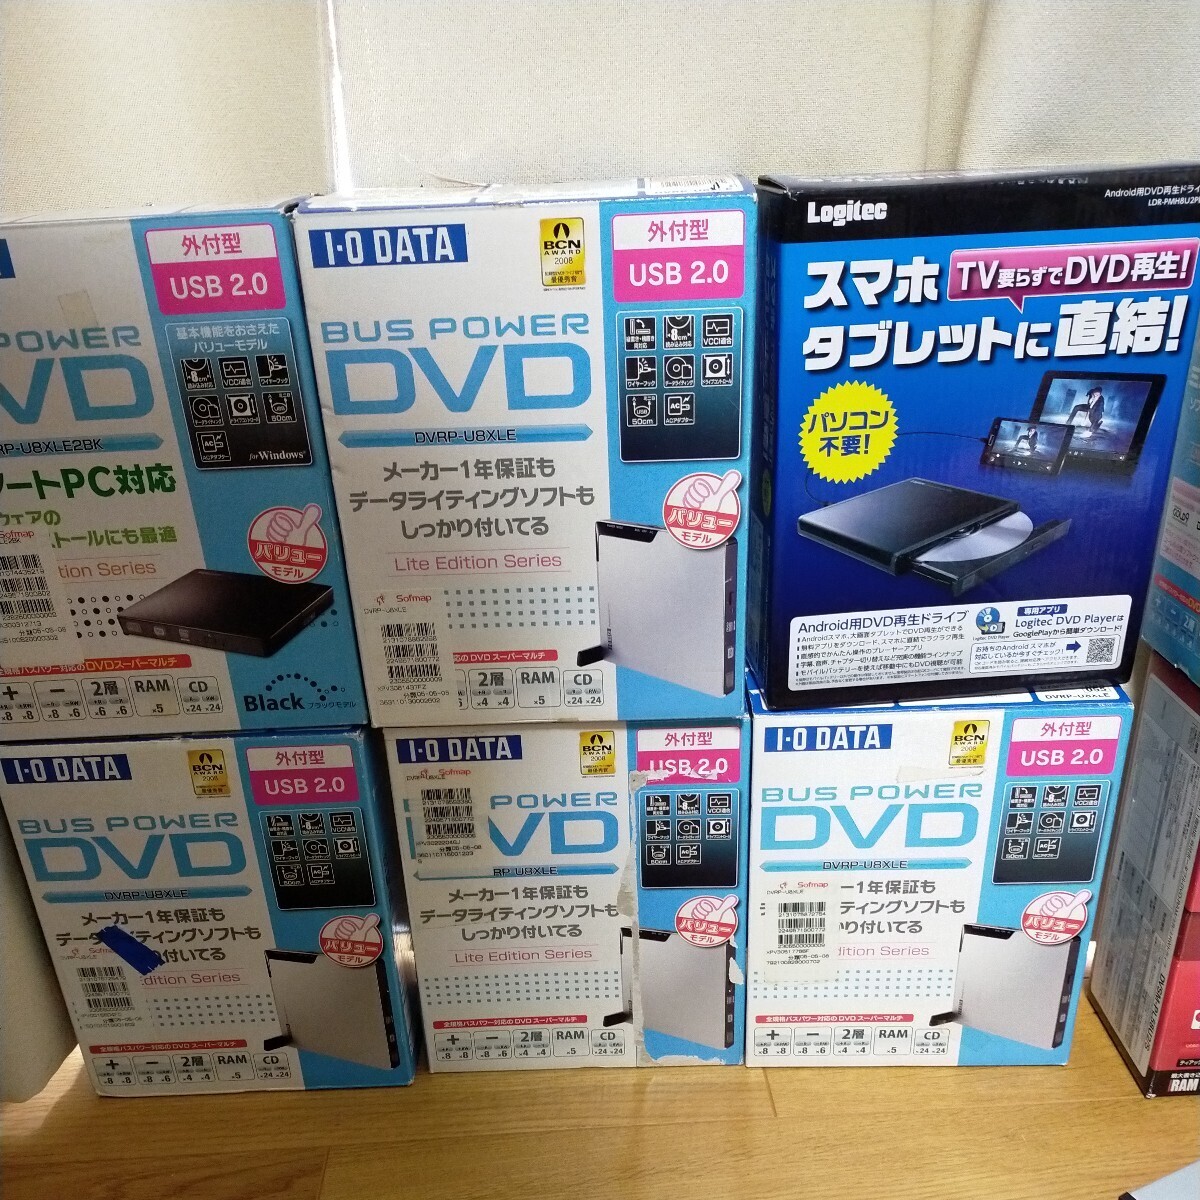 DVDドライブ BUFFALO バッファロー I-O DATA DVDスーパーマルチドライブ 外付け DVD Logitec まとめ 大量 同梱不可 120サイズ_未使用の可能性が高い